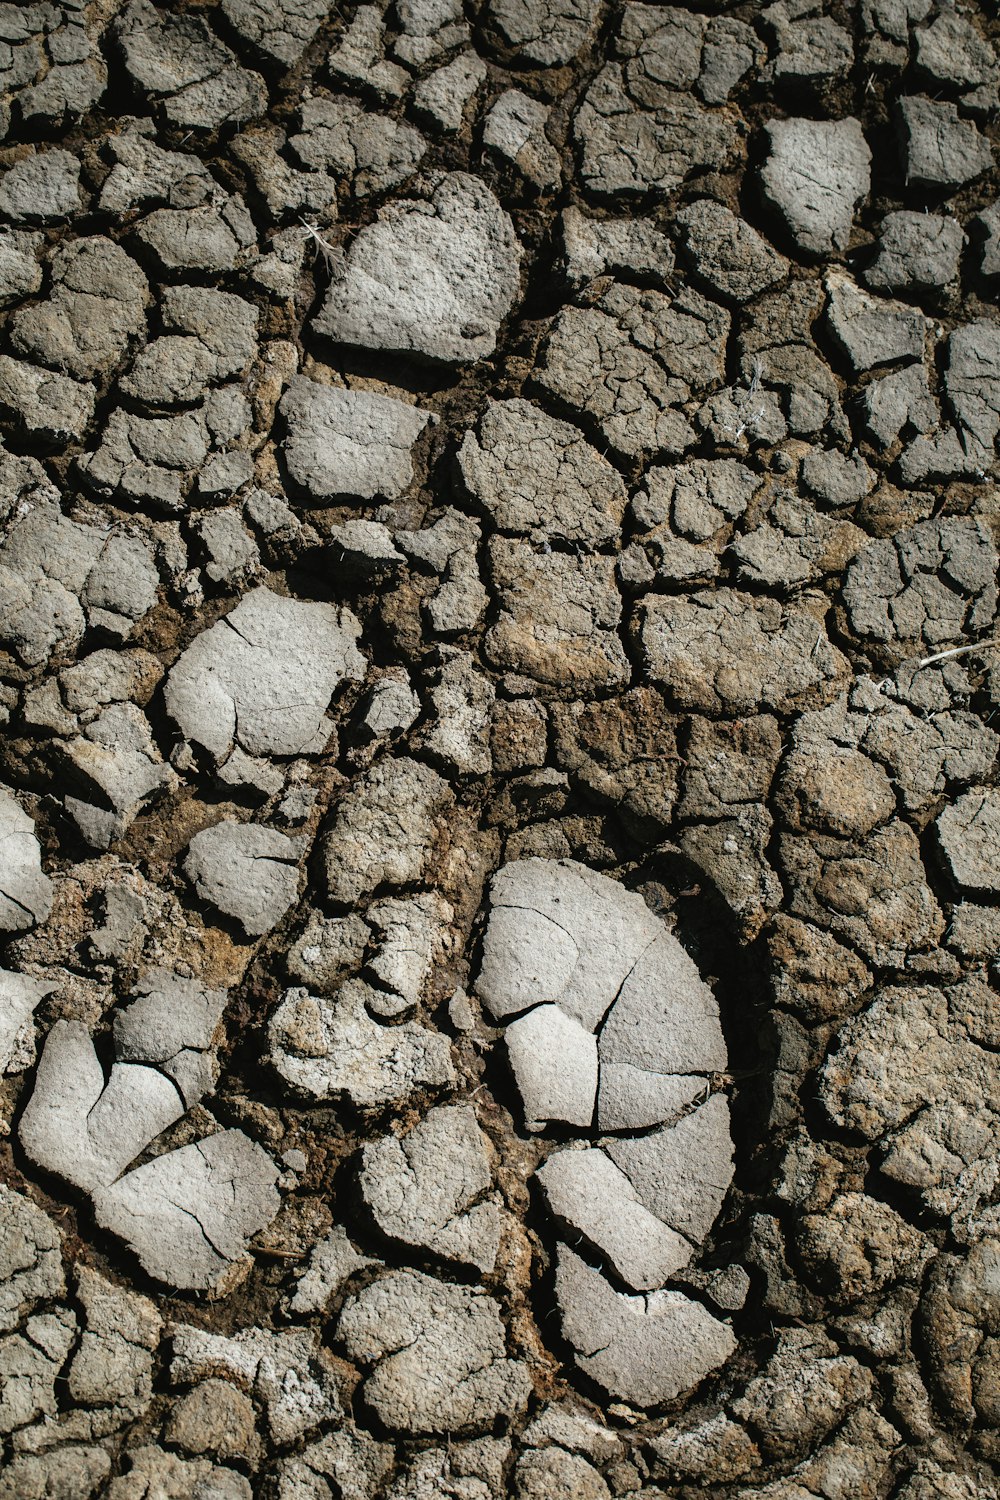 footprints in cracked soil